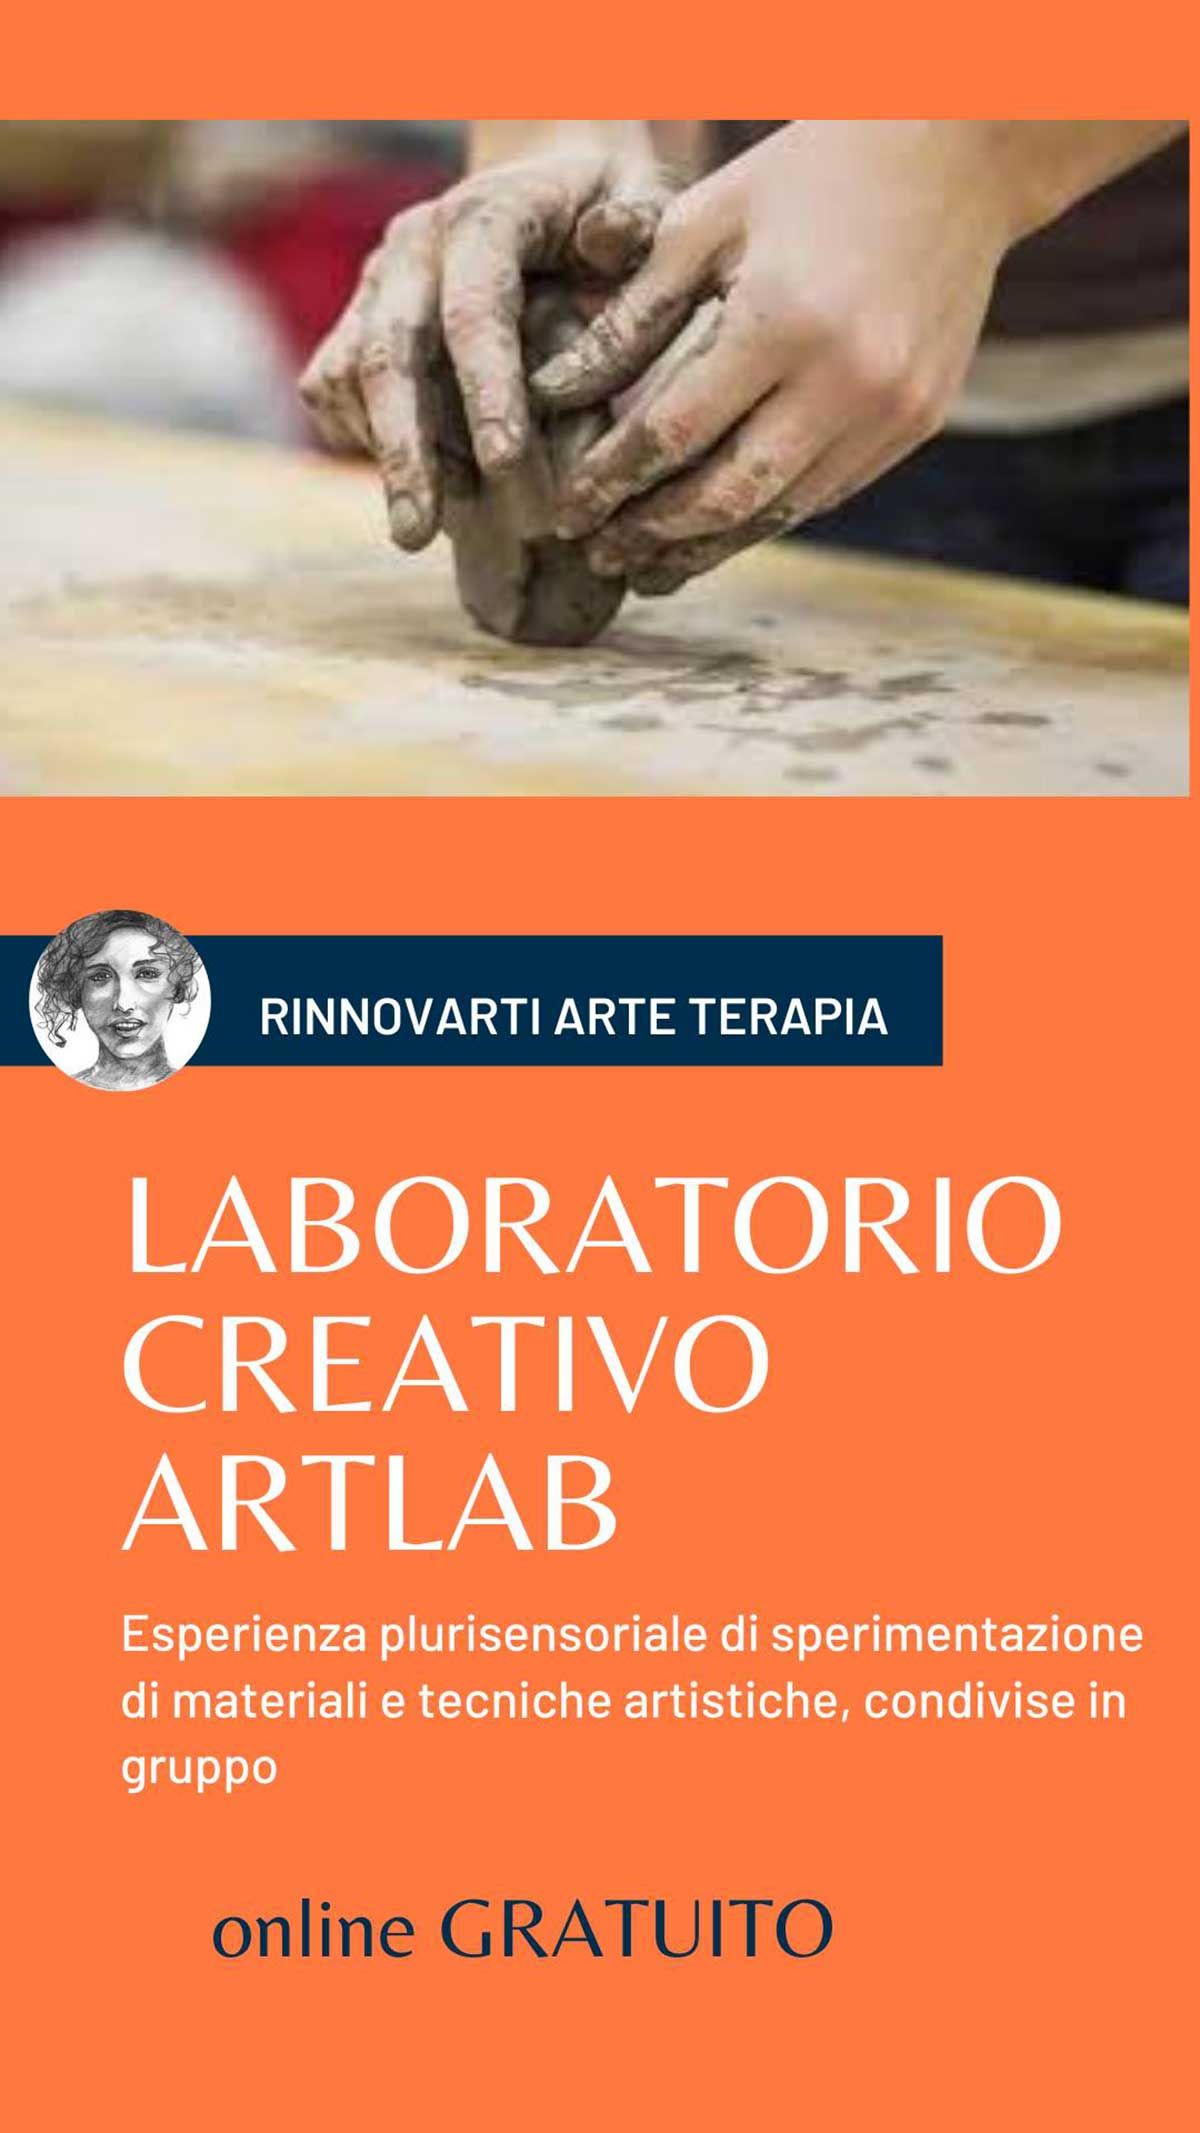 artlab-online-gratuito-artemanujo